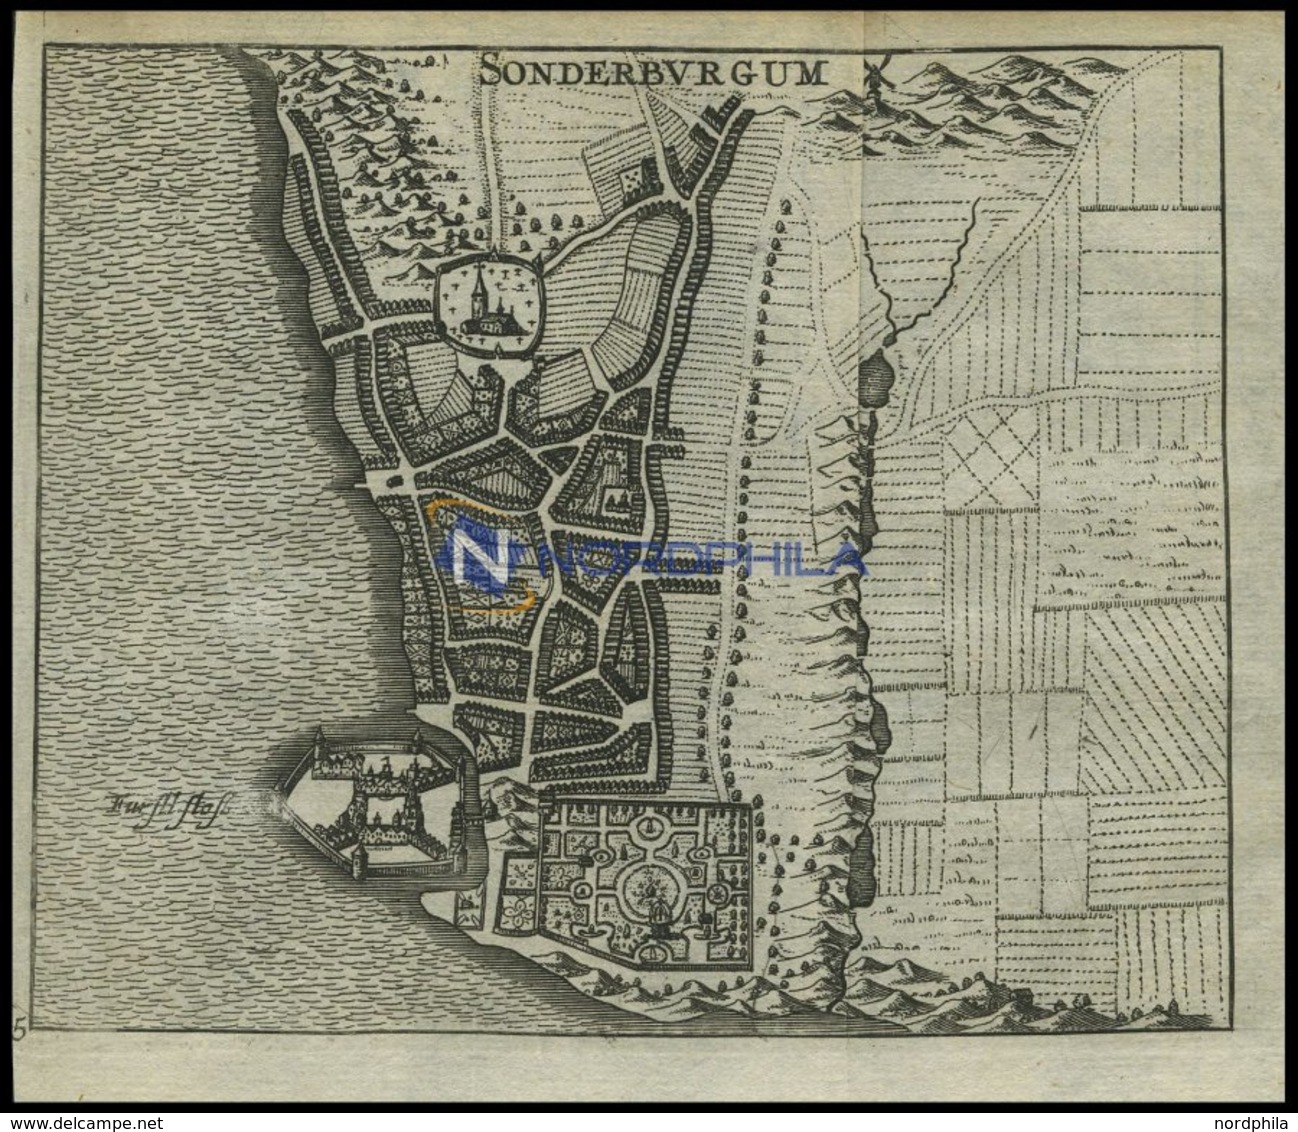 SONDERBURG, Stadtplan Mit Dem Fürstlichen Schloß, Kupferstich Von Zeiller 1655 - Lithographien